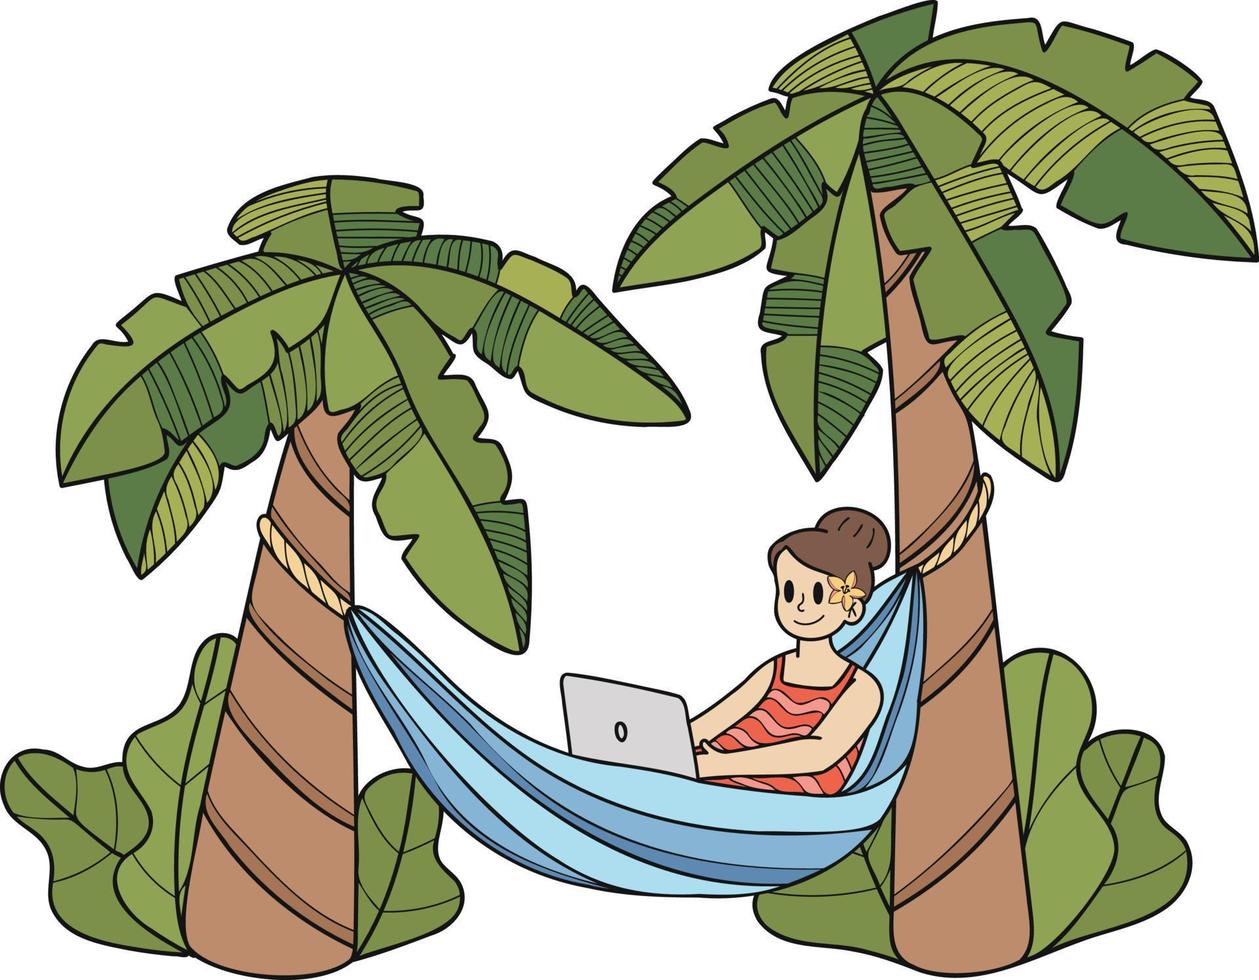 hand dragen frilans kvinna arbetssätt på bärbar dator under kokos träd illustration i klotter stil vektor